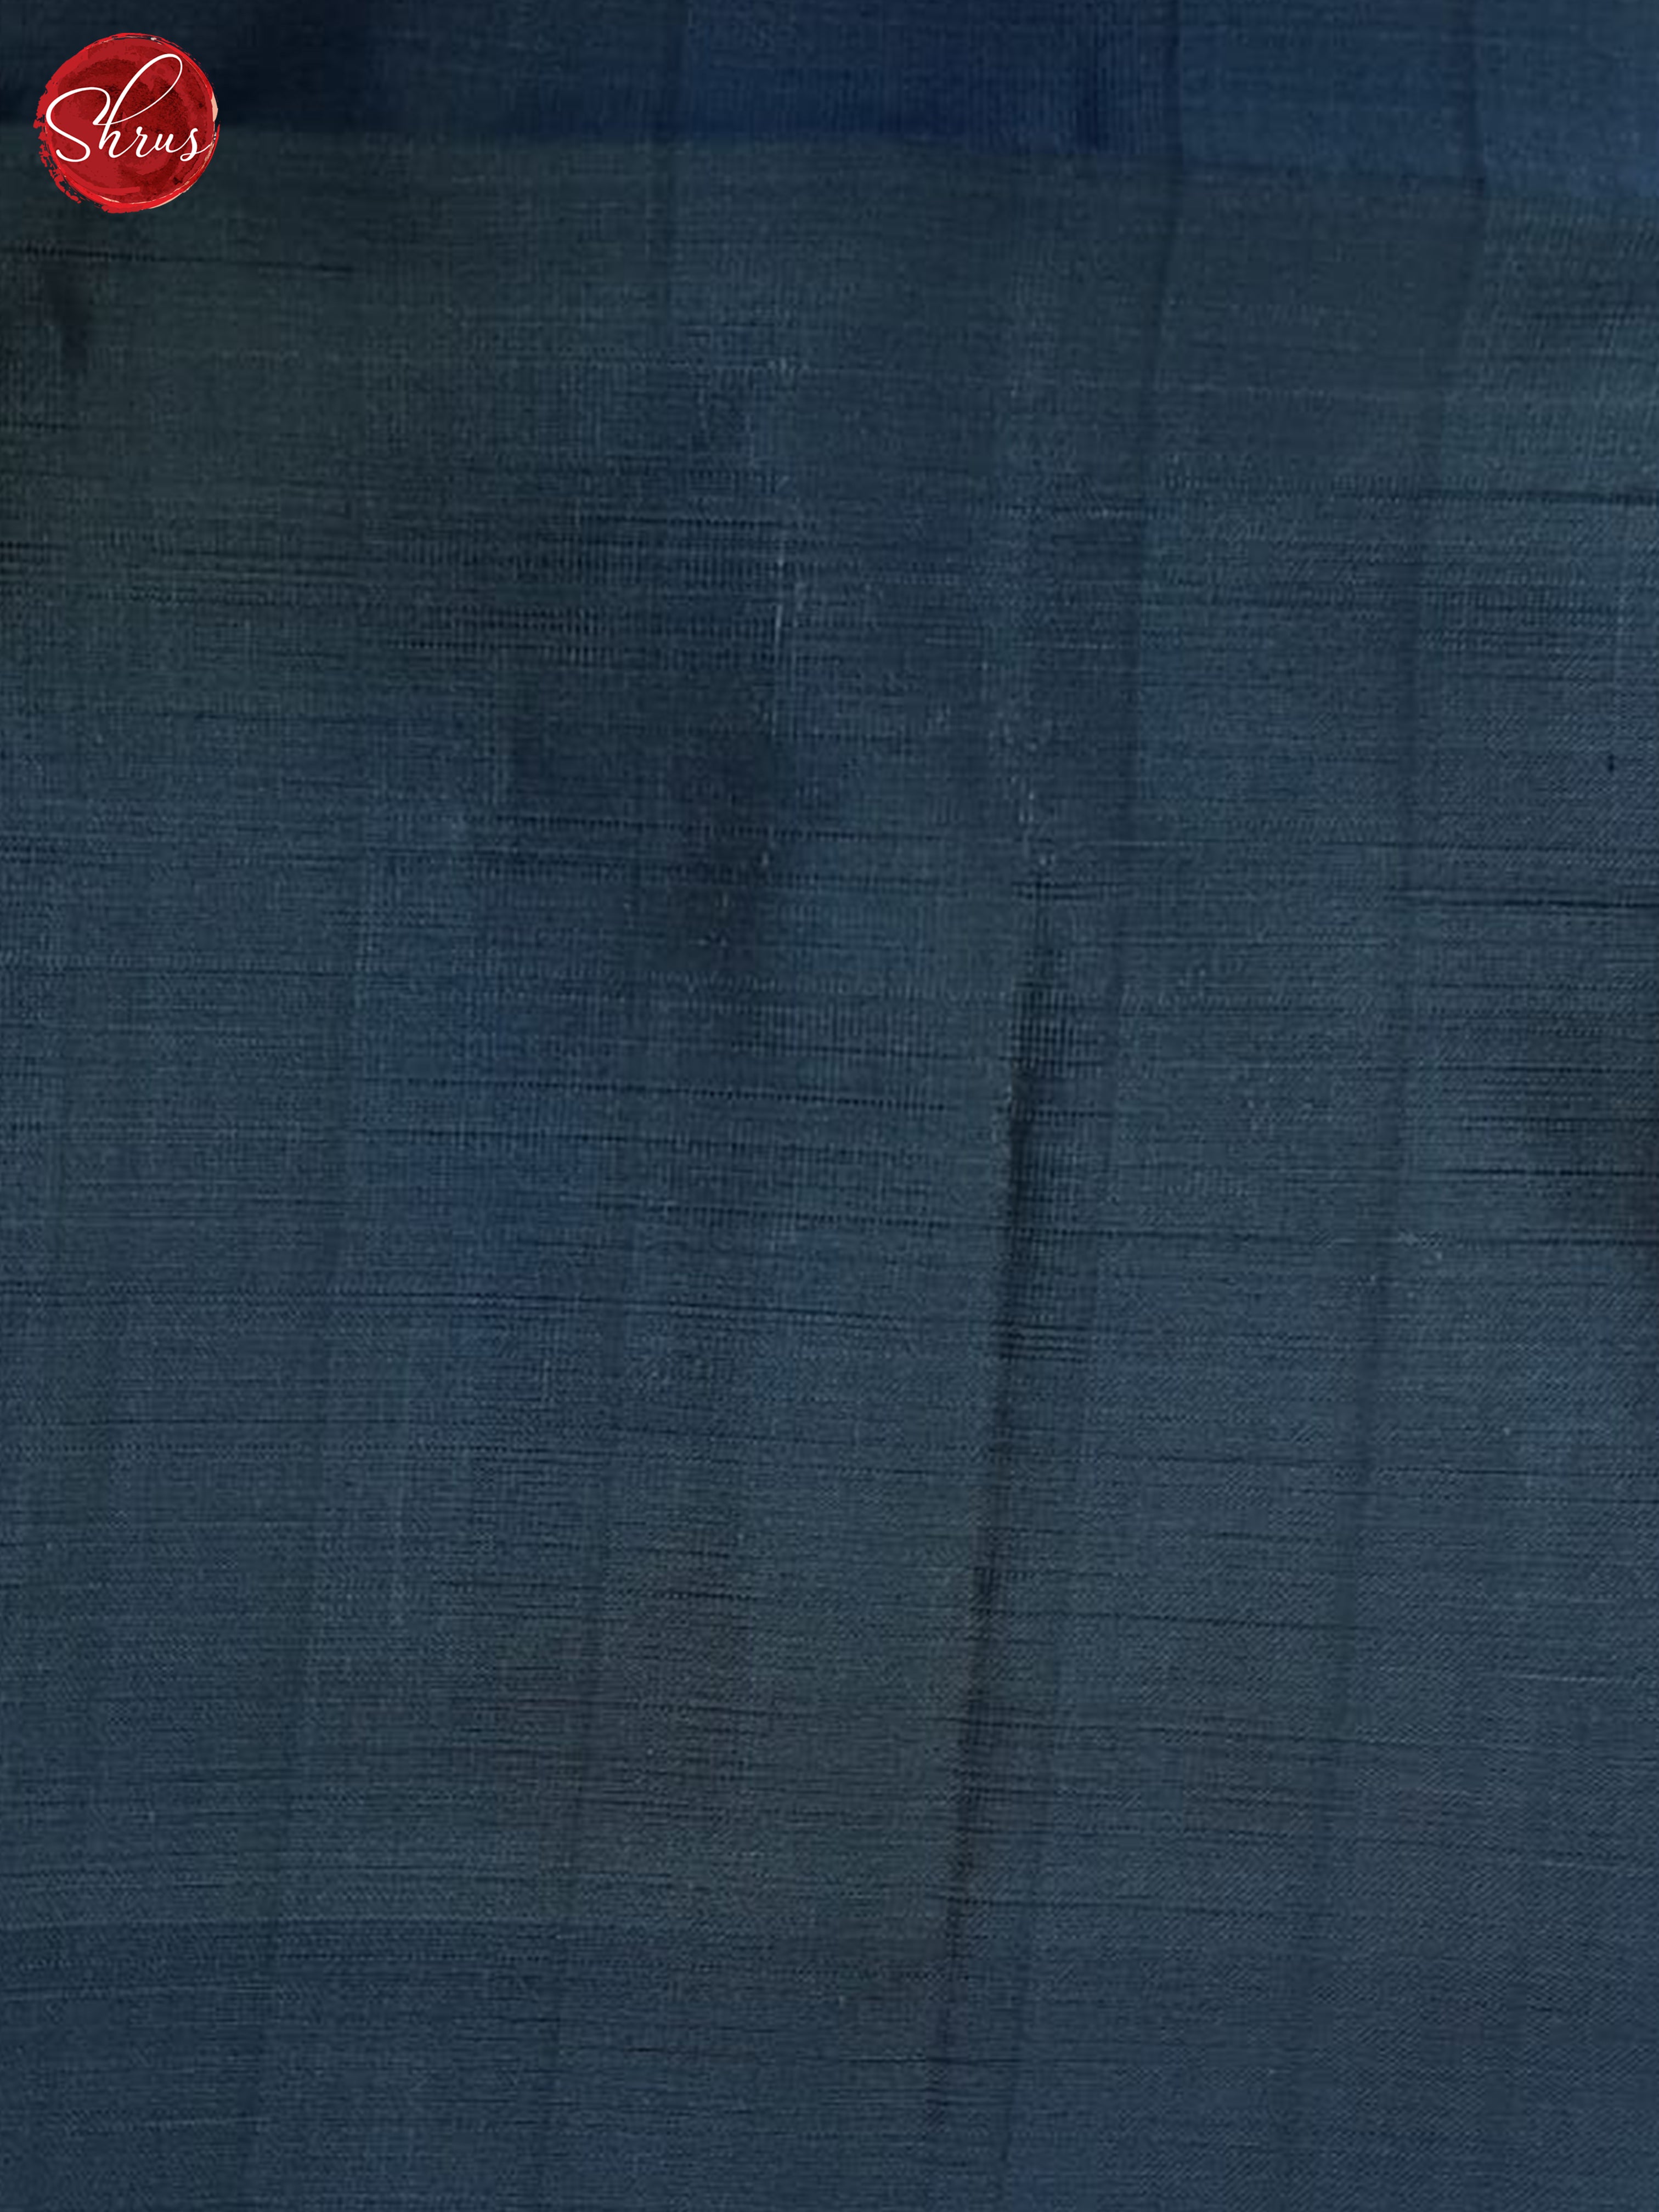 Black And Blue- Soft Silk half-pure Saree - Shop on ShrusEternity.com